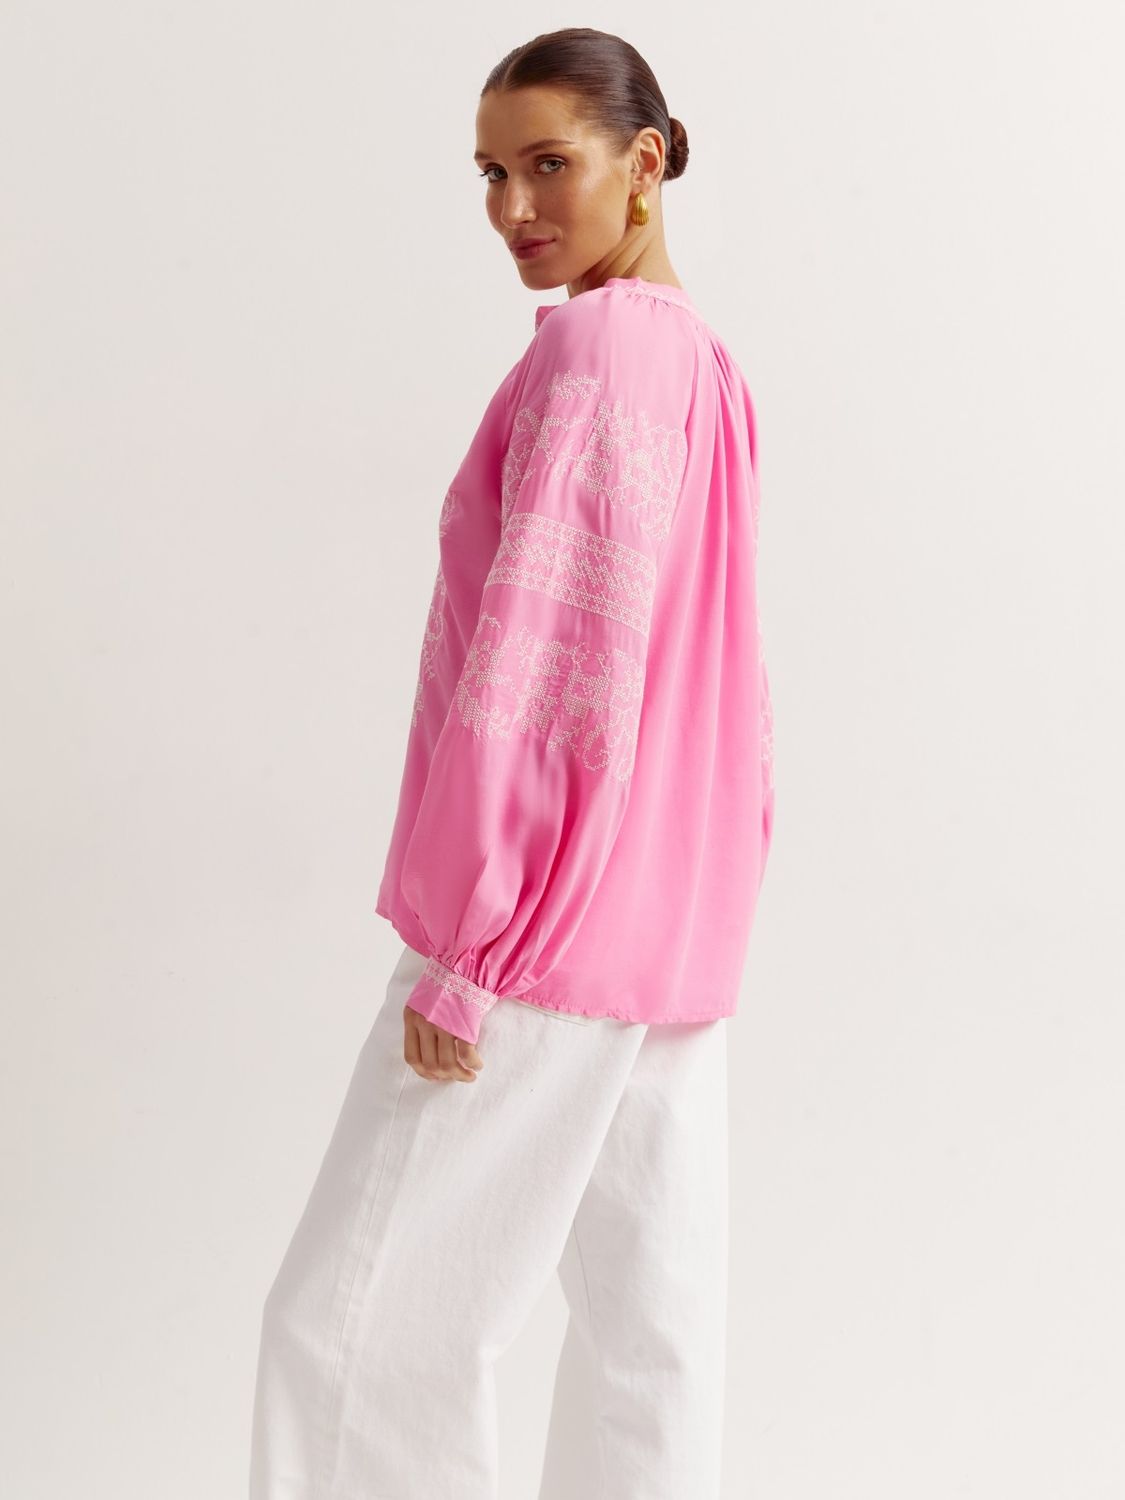 Современная женская вышиванка розового цвета - фото